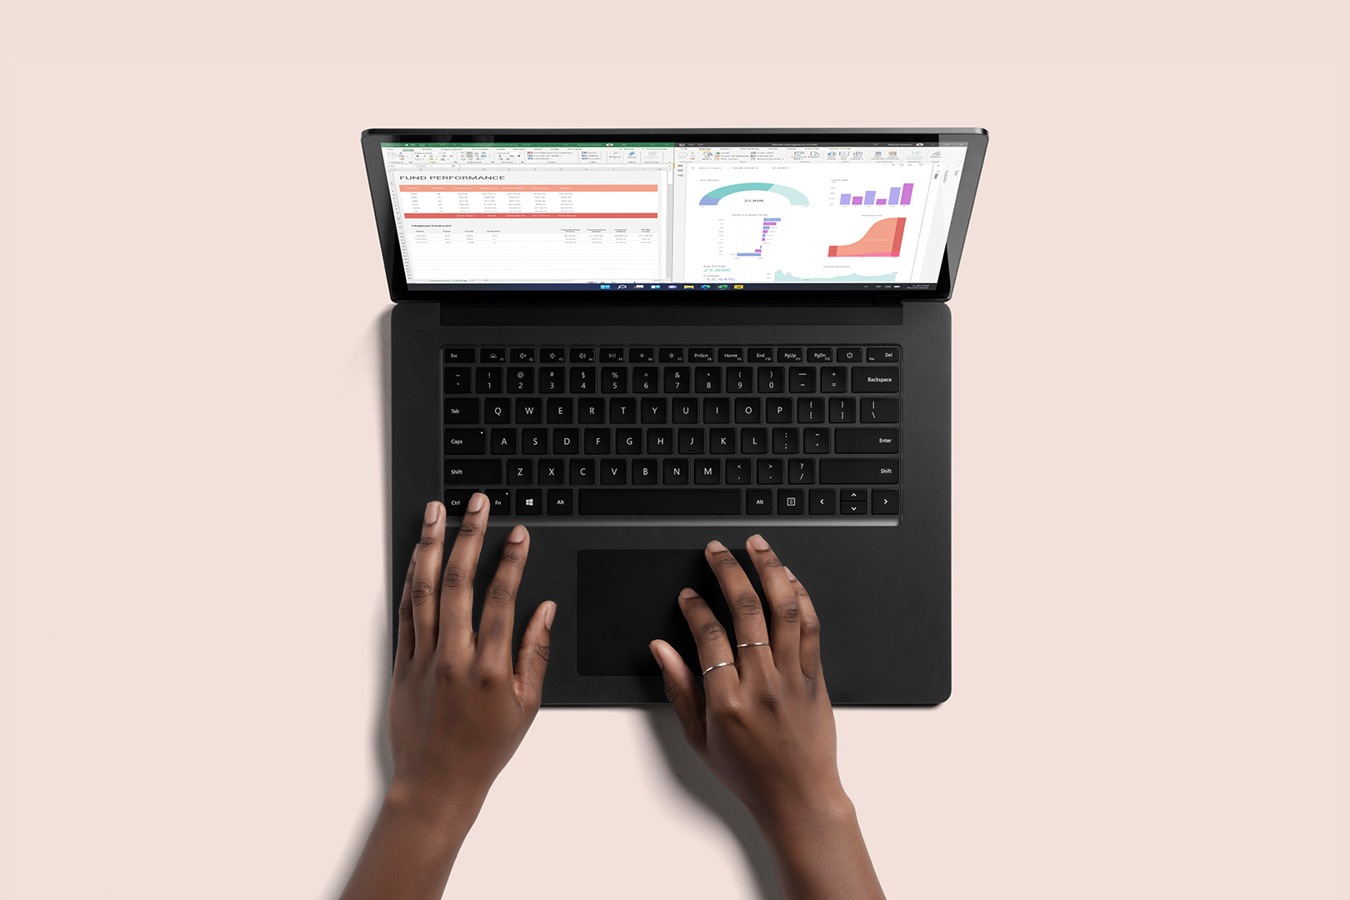 Widok od góry urządzenia Surface Laptop 4 w kolorze czarnym z dwoma rękami piszącymi na klawiaturze
